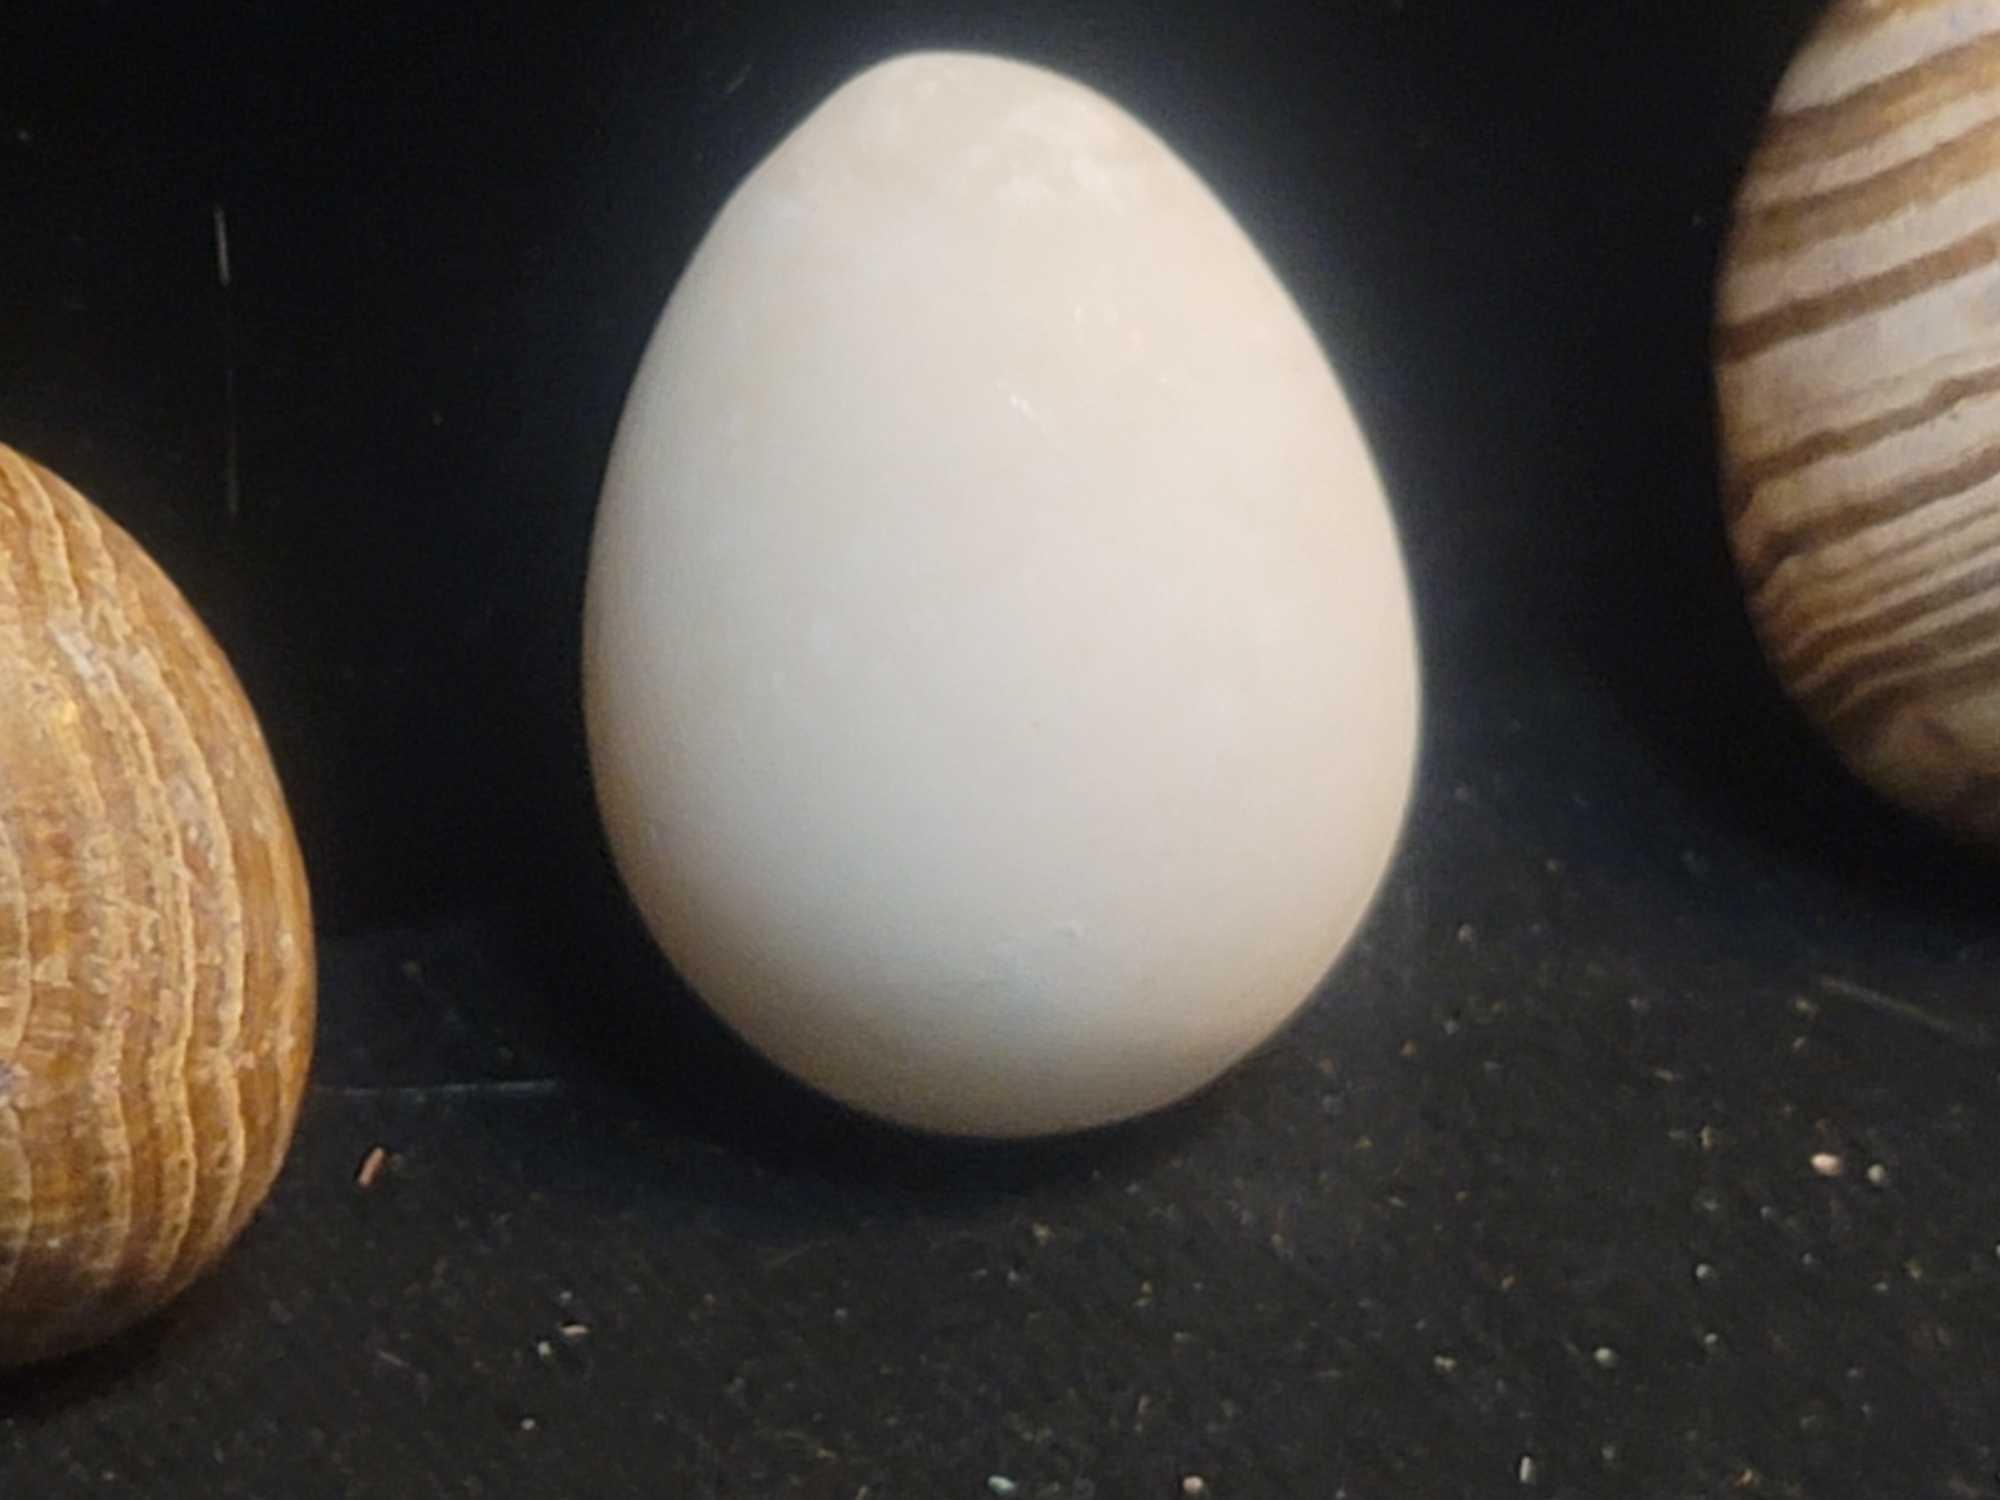 3 Stone Eggs